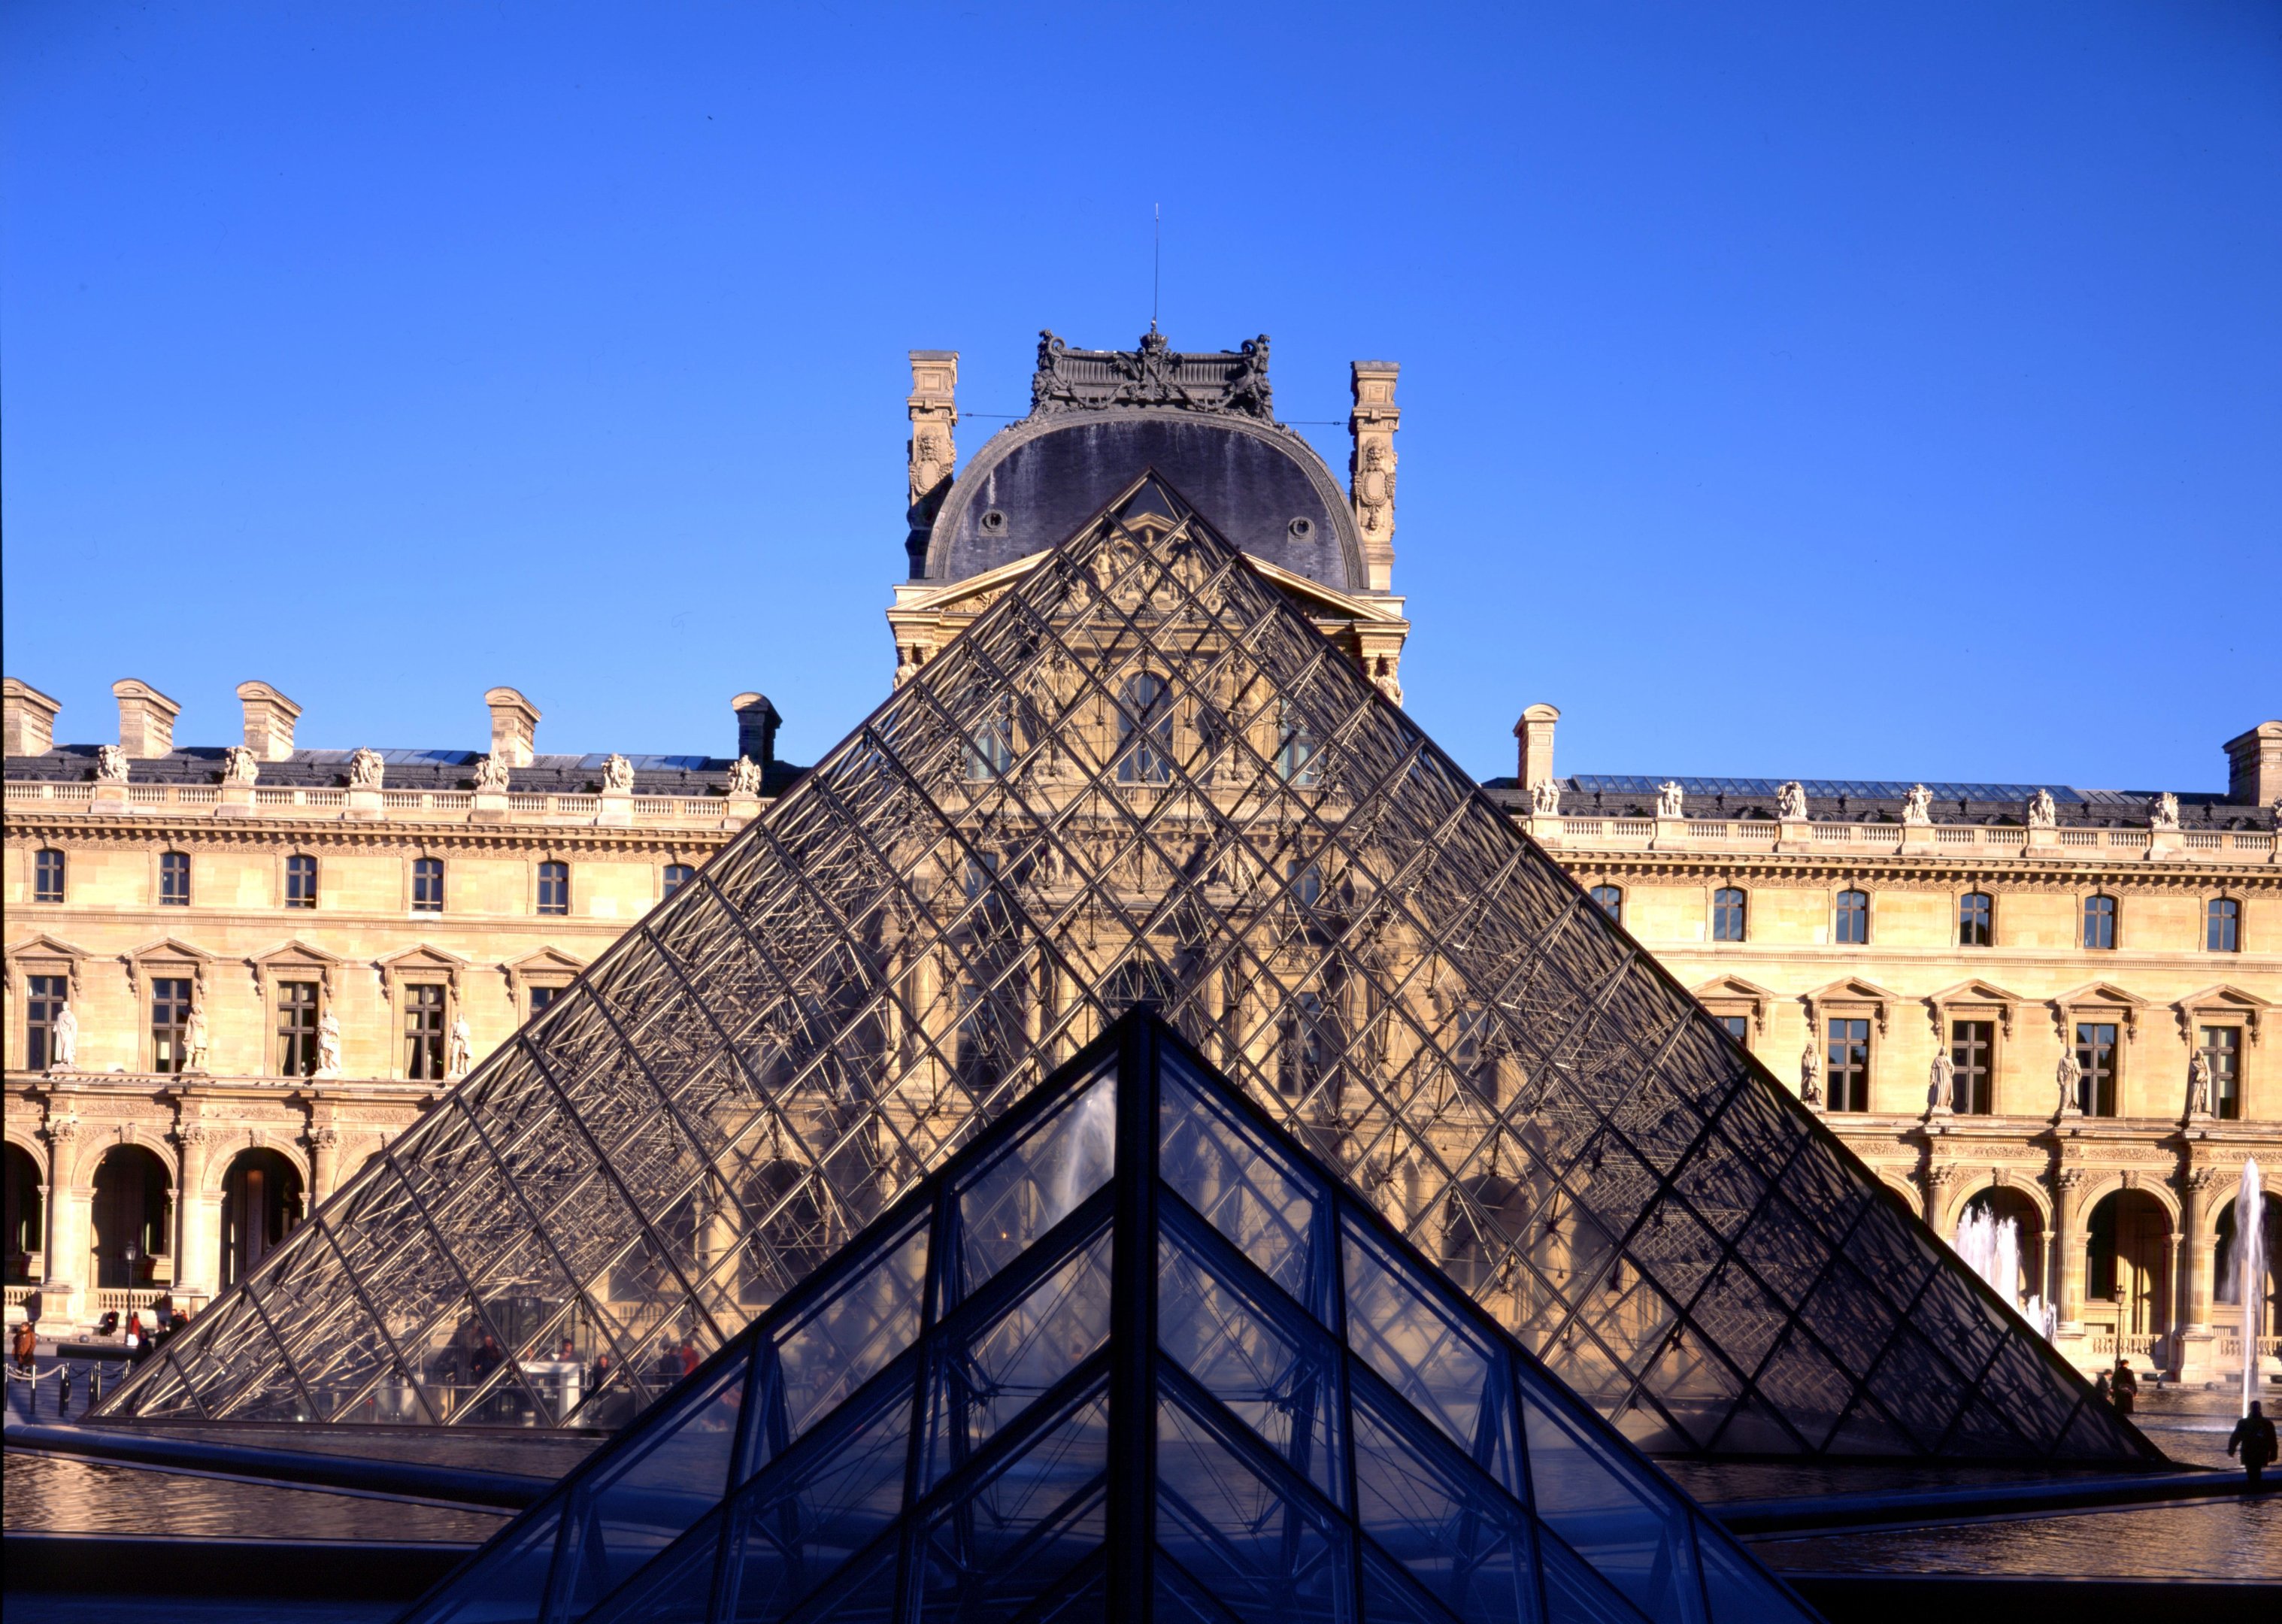 Pirâmide de vidro no Museu do Louvre, em Paris.